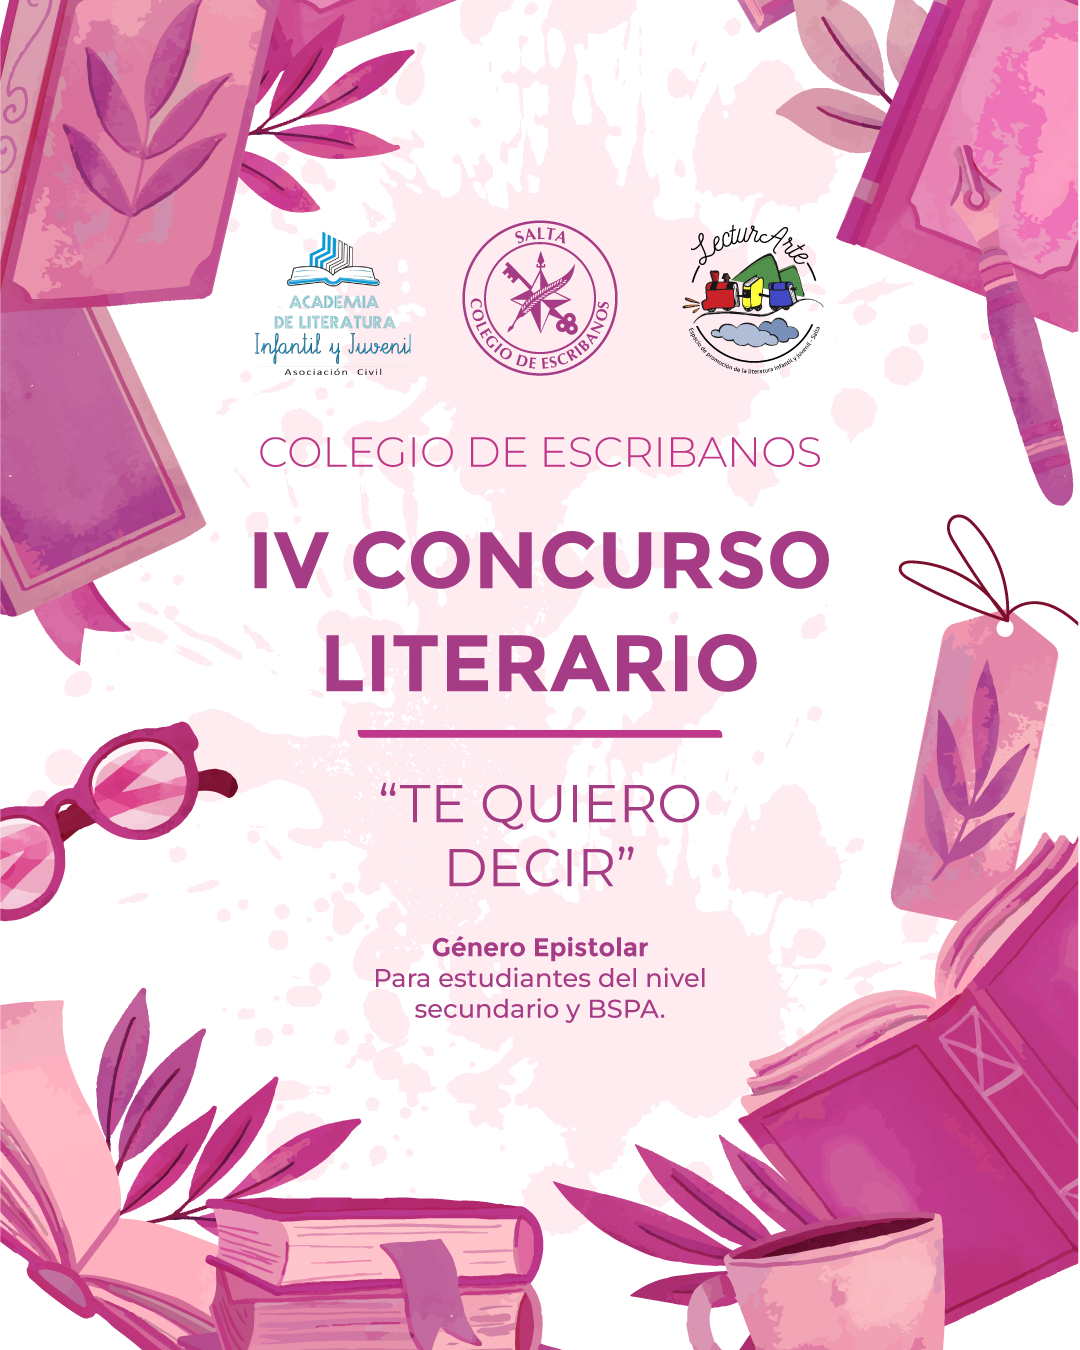 Fotografía: El Colegio de Escribanos lanzó su 4º Concurso Literario dirigido a adolescentes y adultos